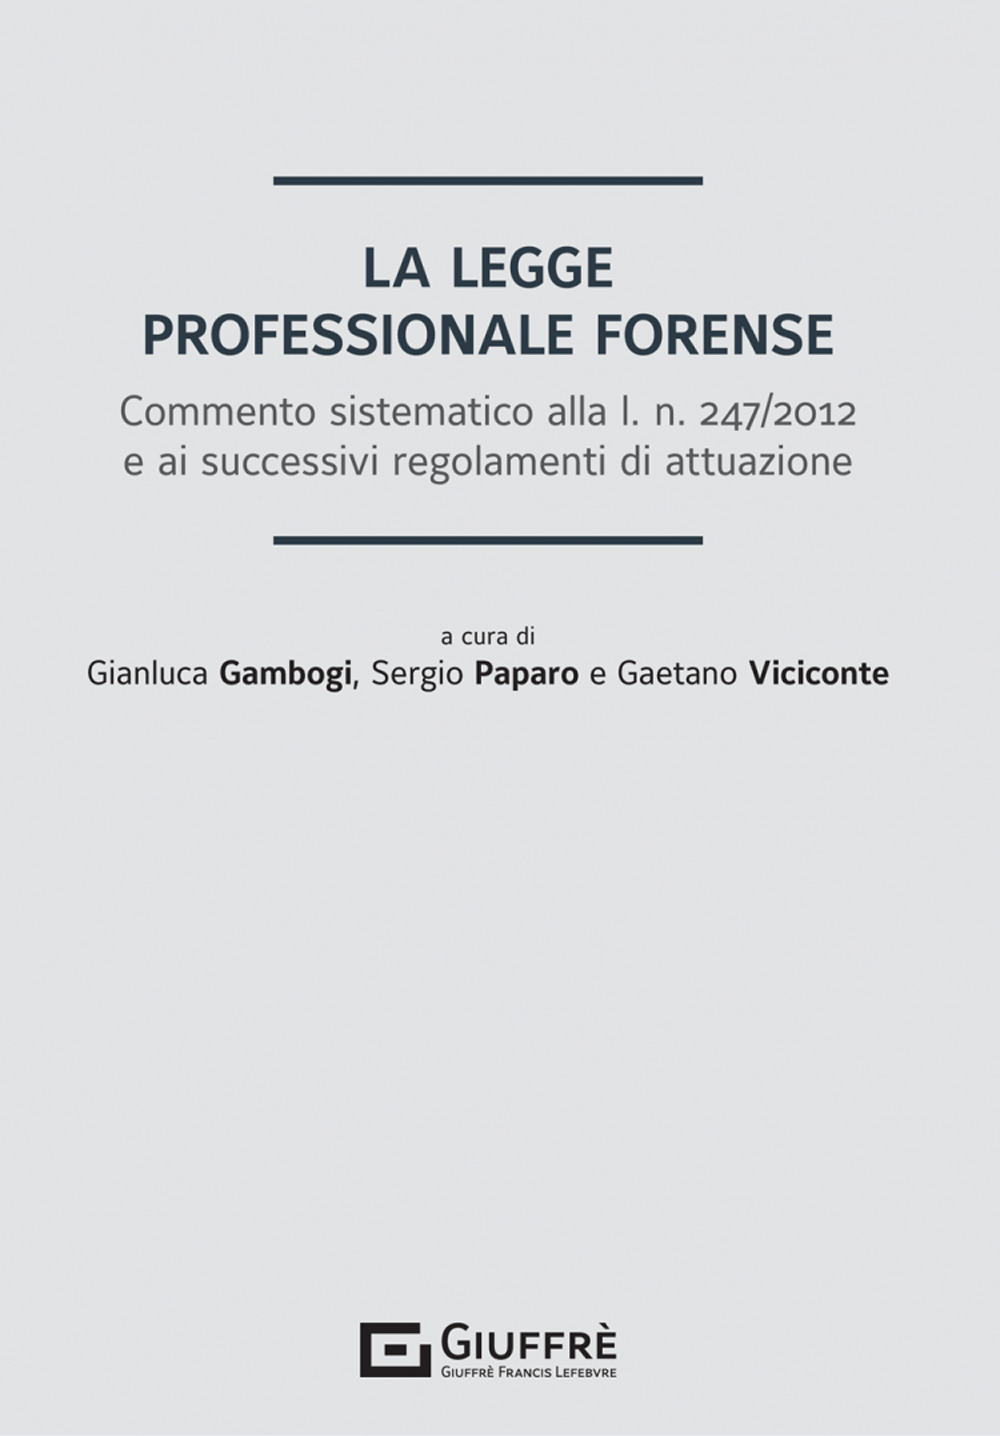 La legge professionale forense